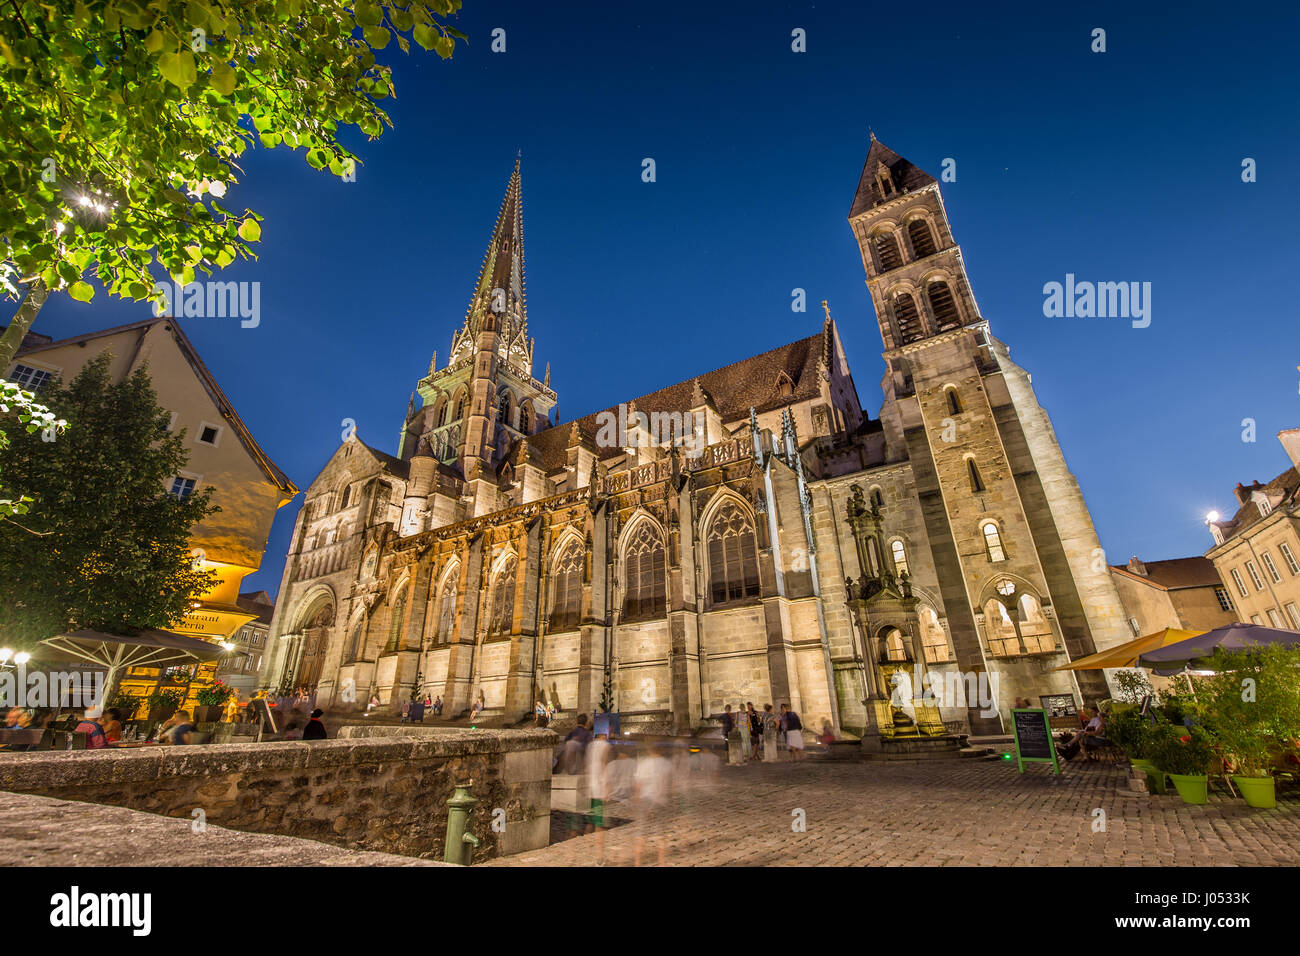 Ville historique d'Autun avec sa célèbre Cathédrale Saint-Lazare d'Autun illuminée en bleu pendant l'heure du crépuscule magnifique, au crépuscule, en Saône-et-Loire, France Banque D'Images